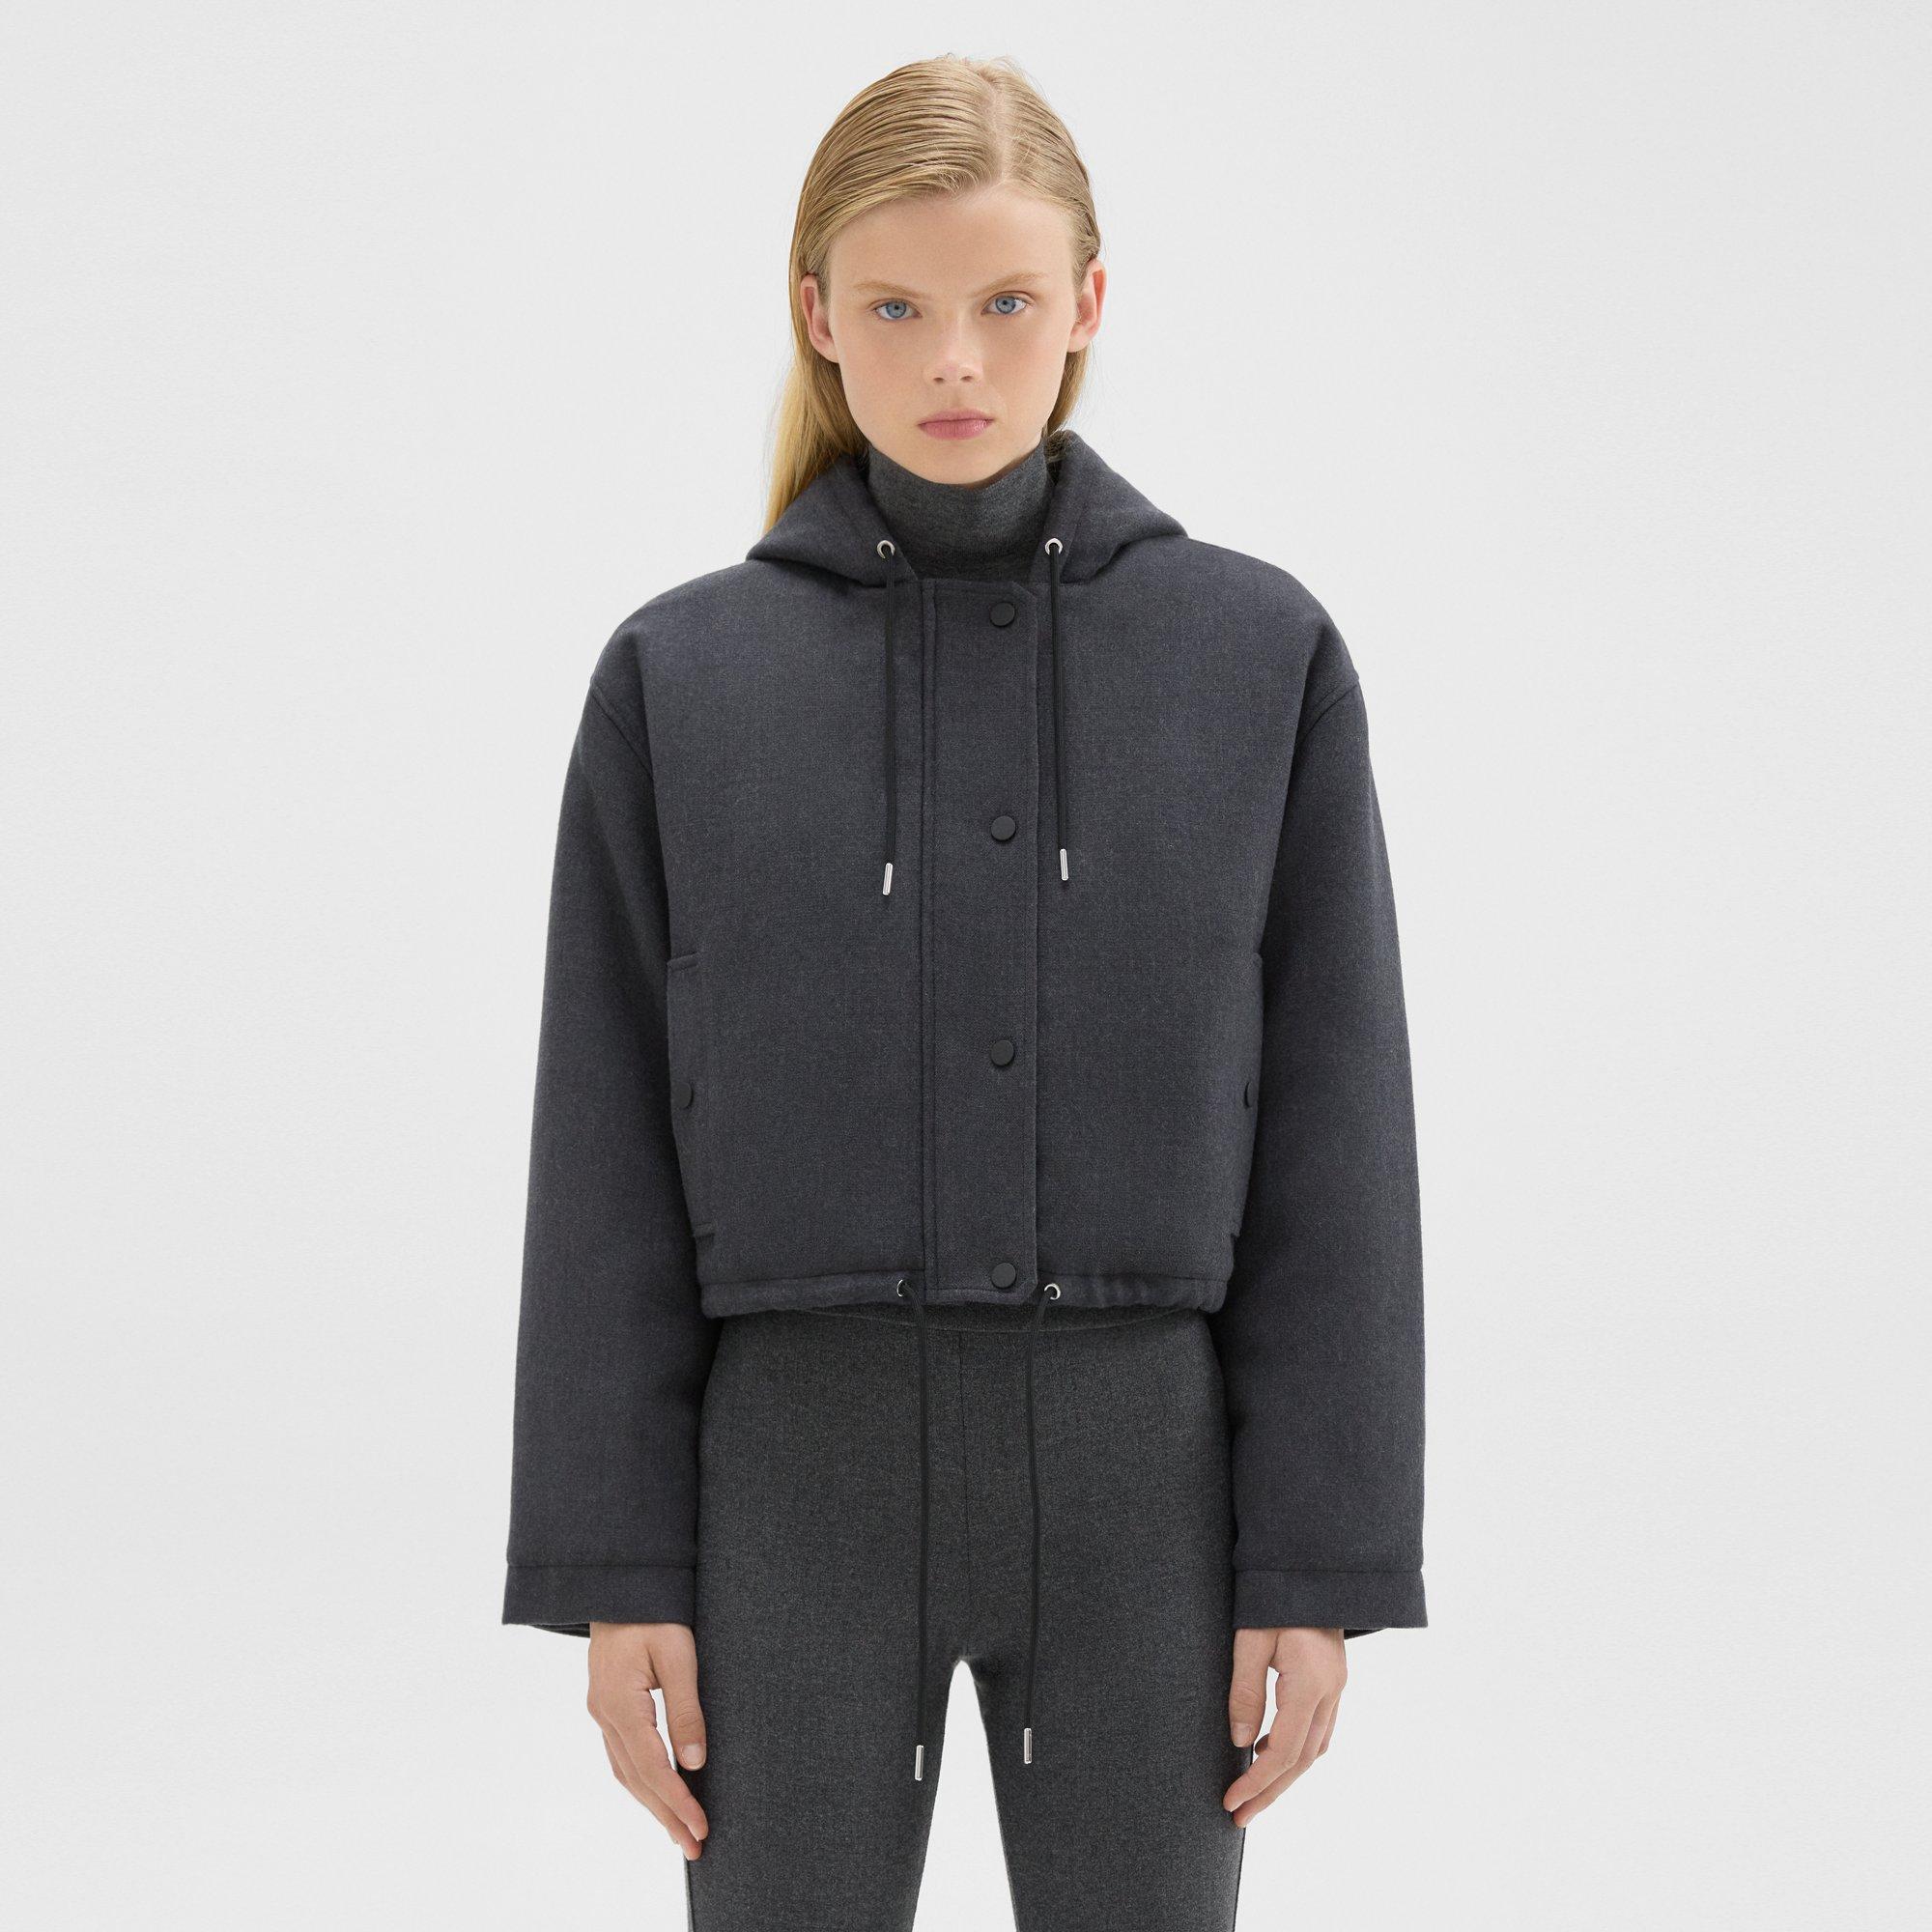 Walle Cropped bouclé wool jacket - Jackets & Blazers